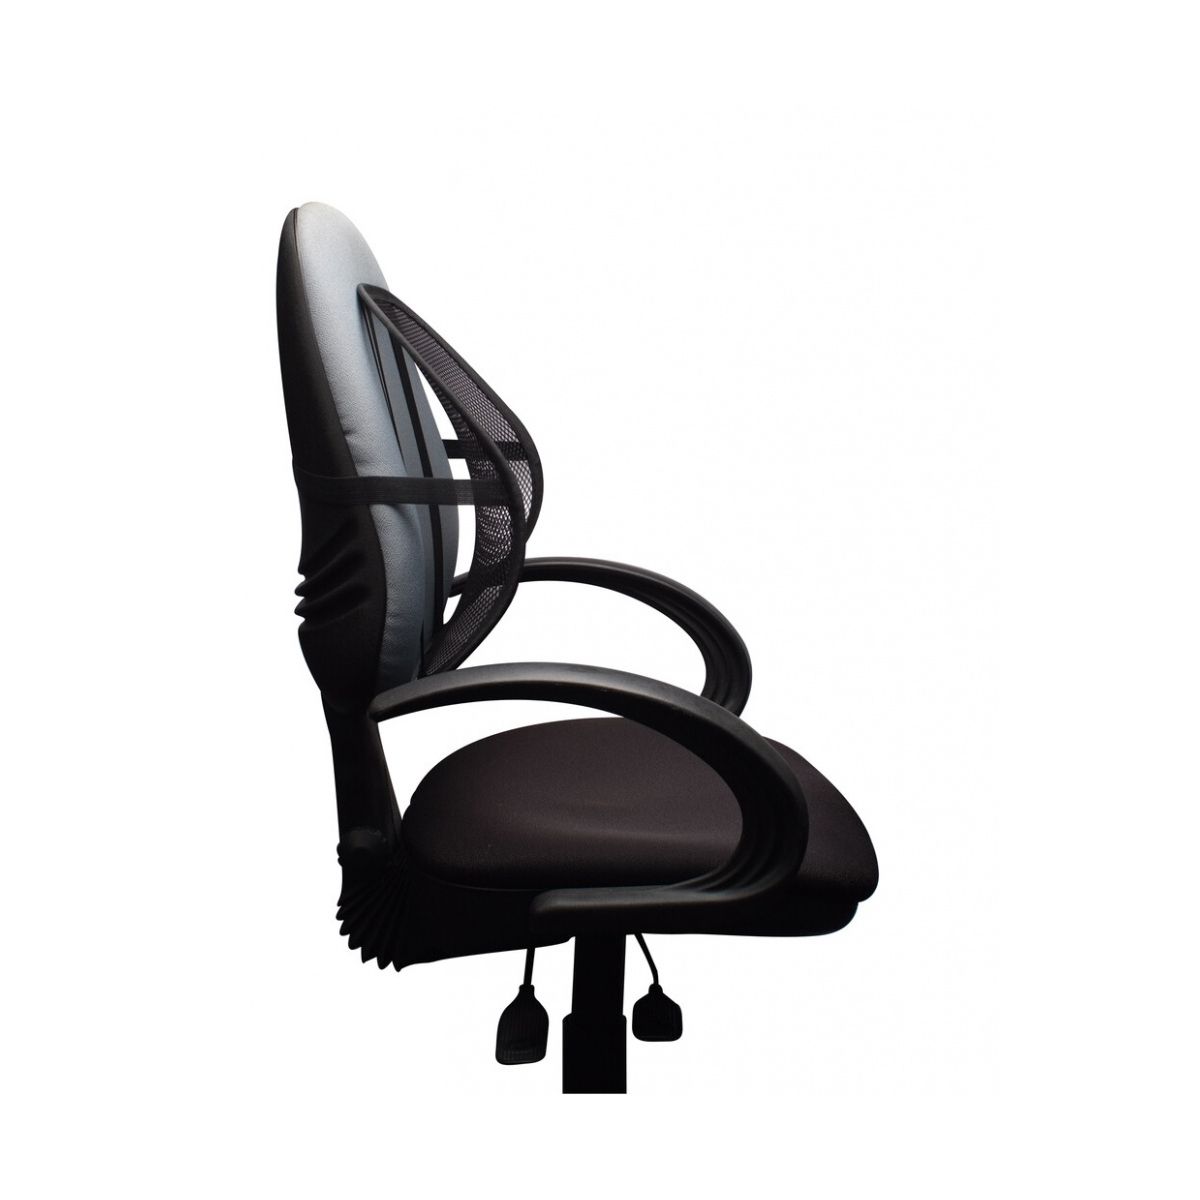 Fotel biurowy Office Products Corfu2 czarny (23023631-05)